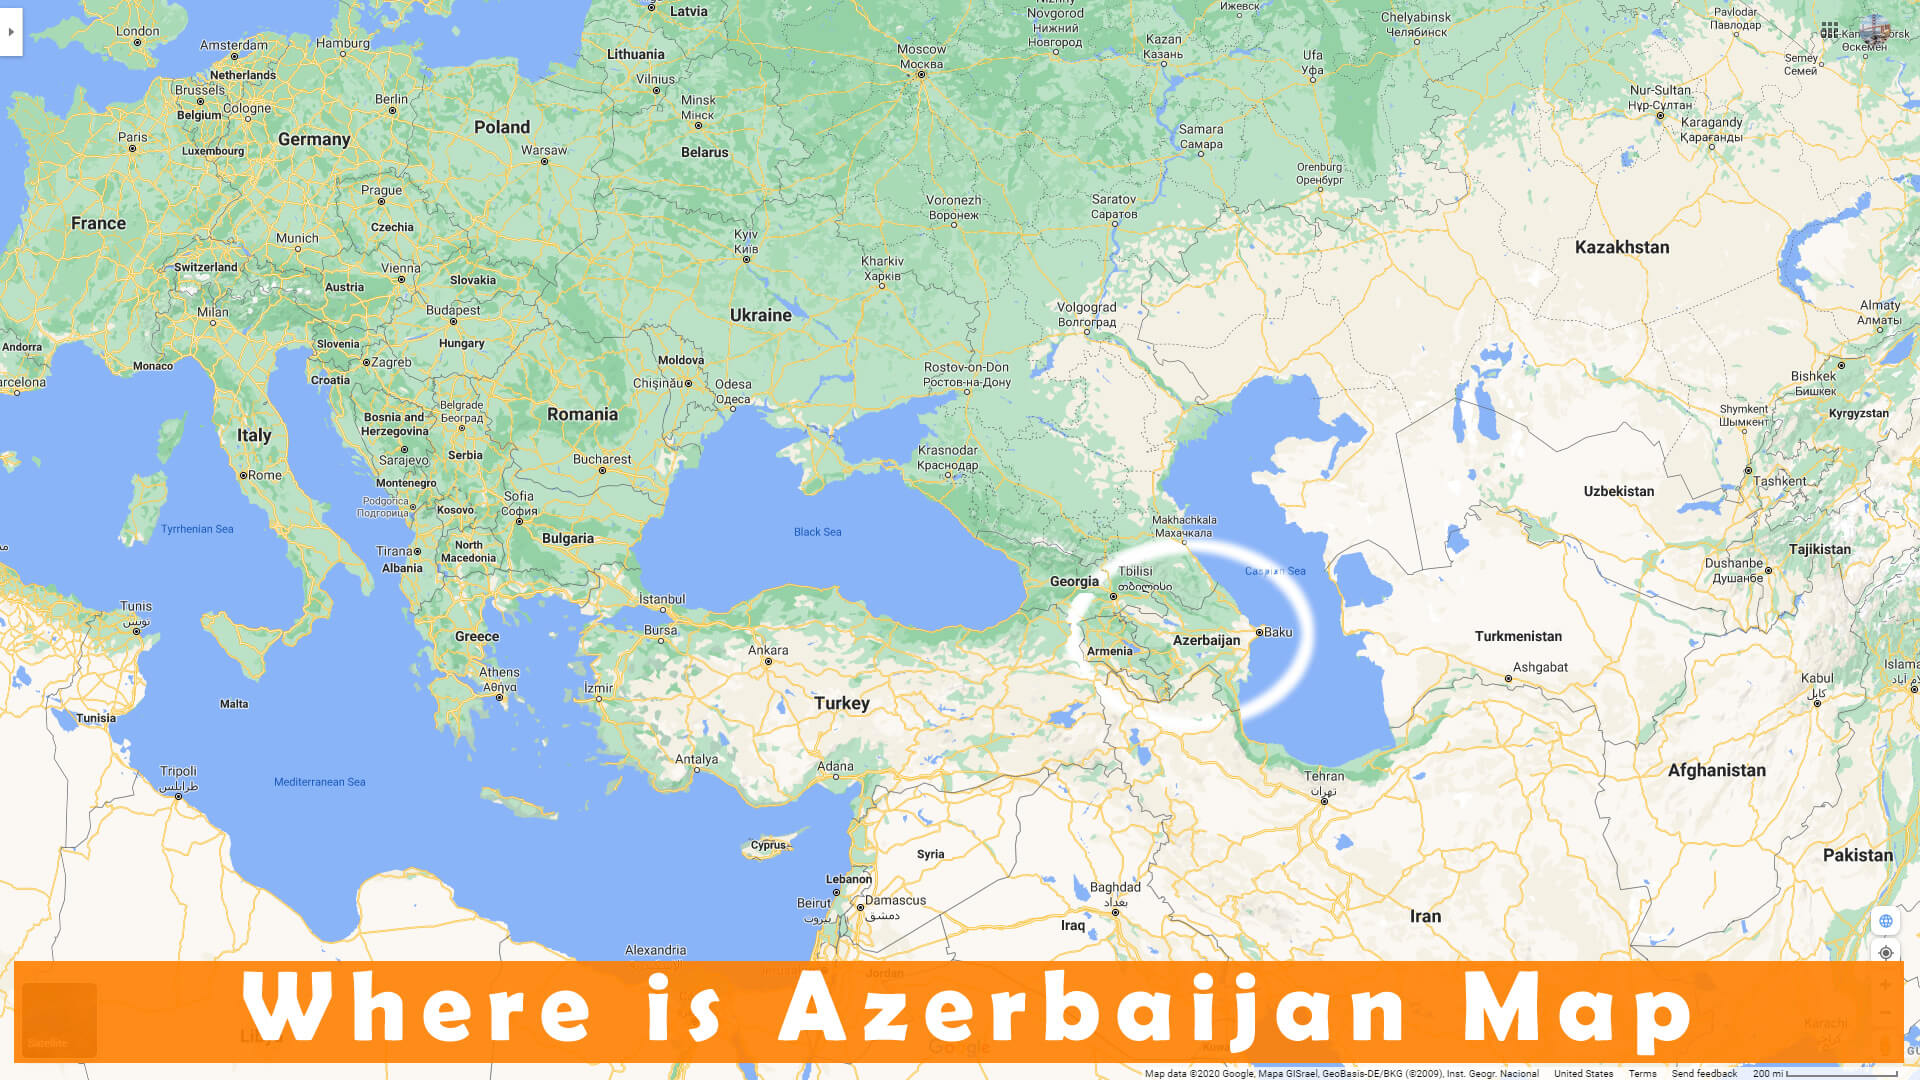 Where is Azerbaijan Map